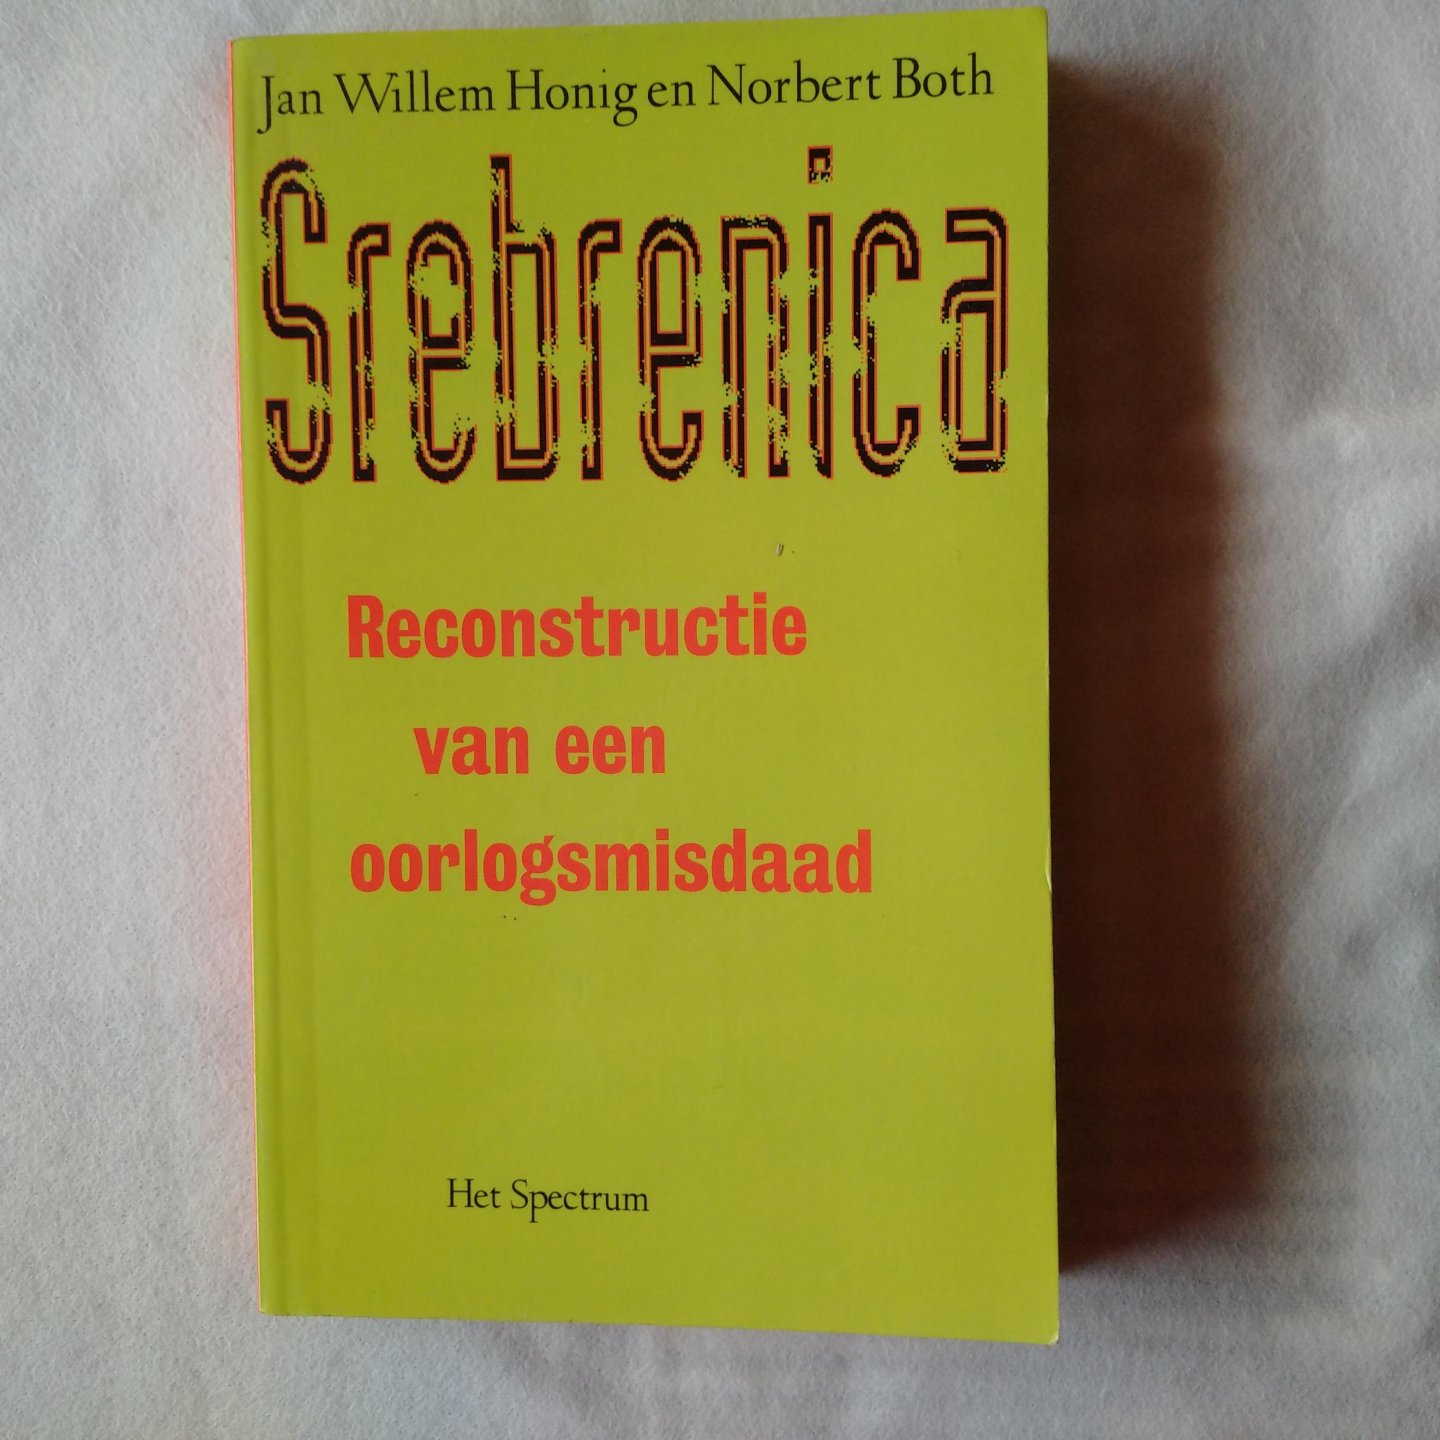 Honig, Jan Willem & Both, Norbert - Srebrenica. Reconstructie van een oorlogsmisdaad